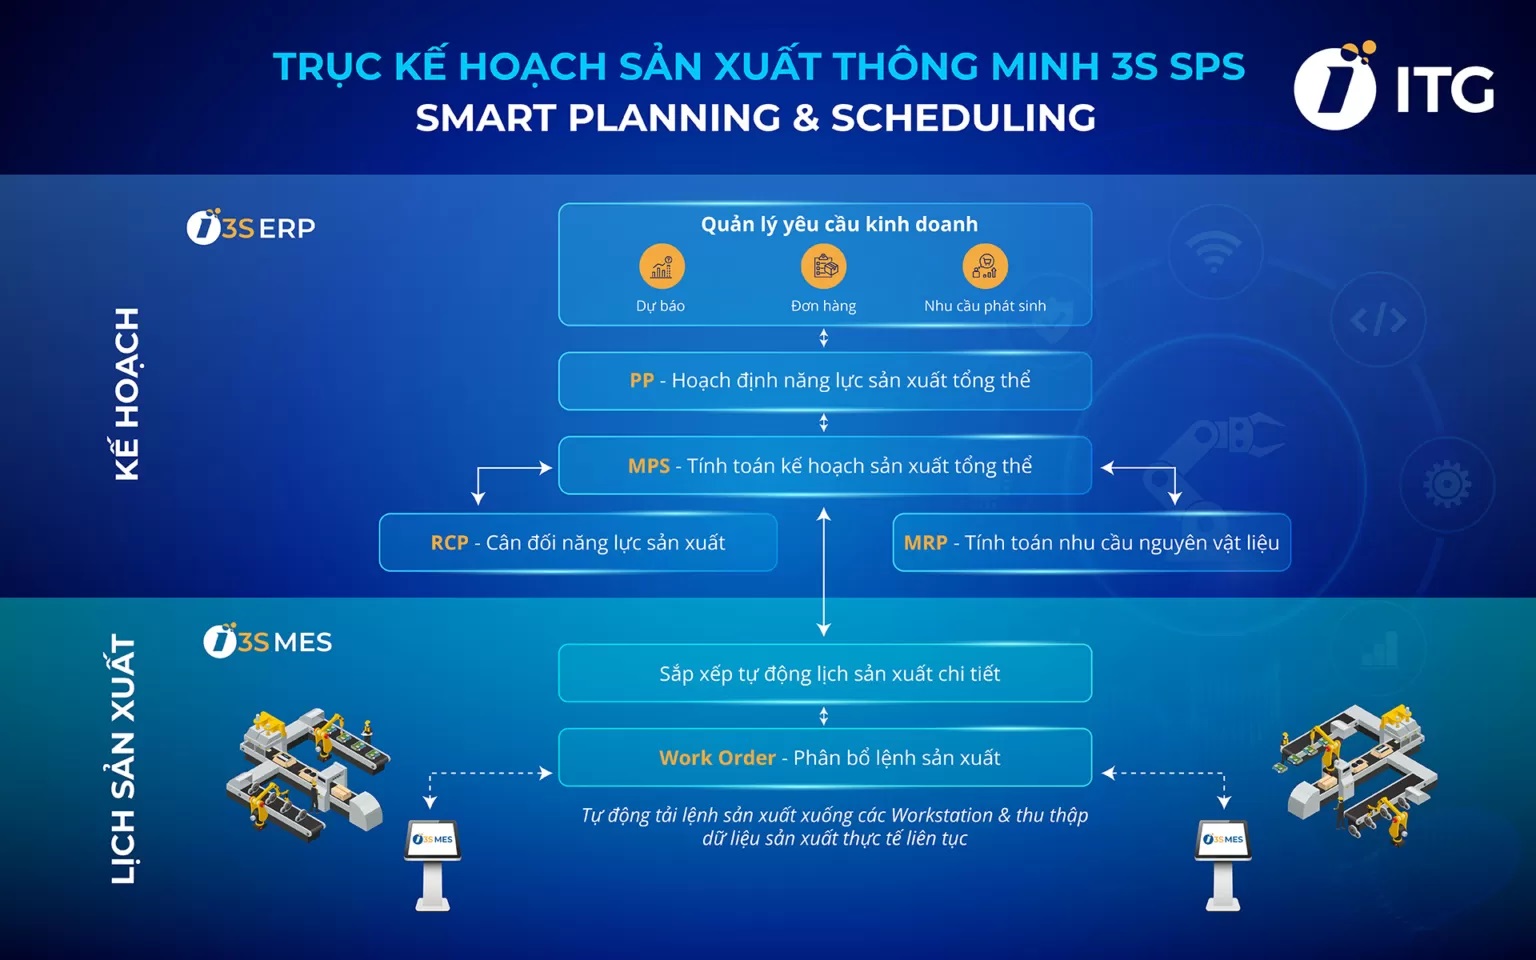 3S SPS là giải pháp lập kế hoạch và lịch sản xuất thông minh